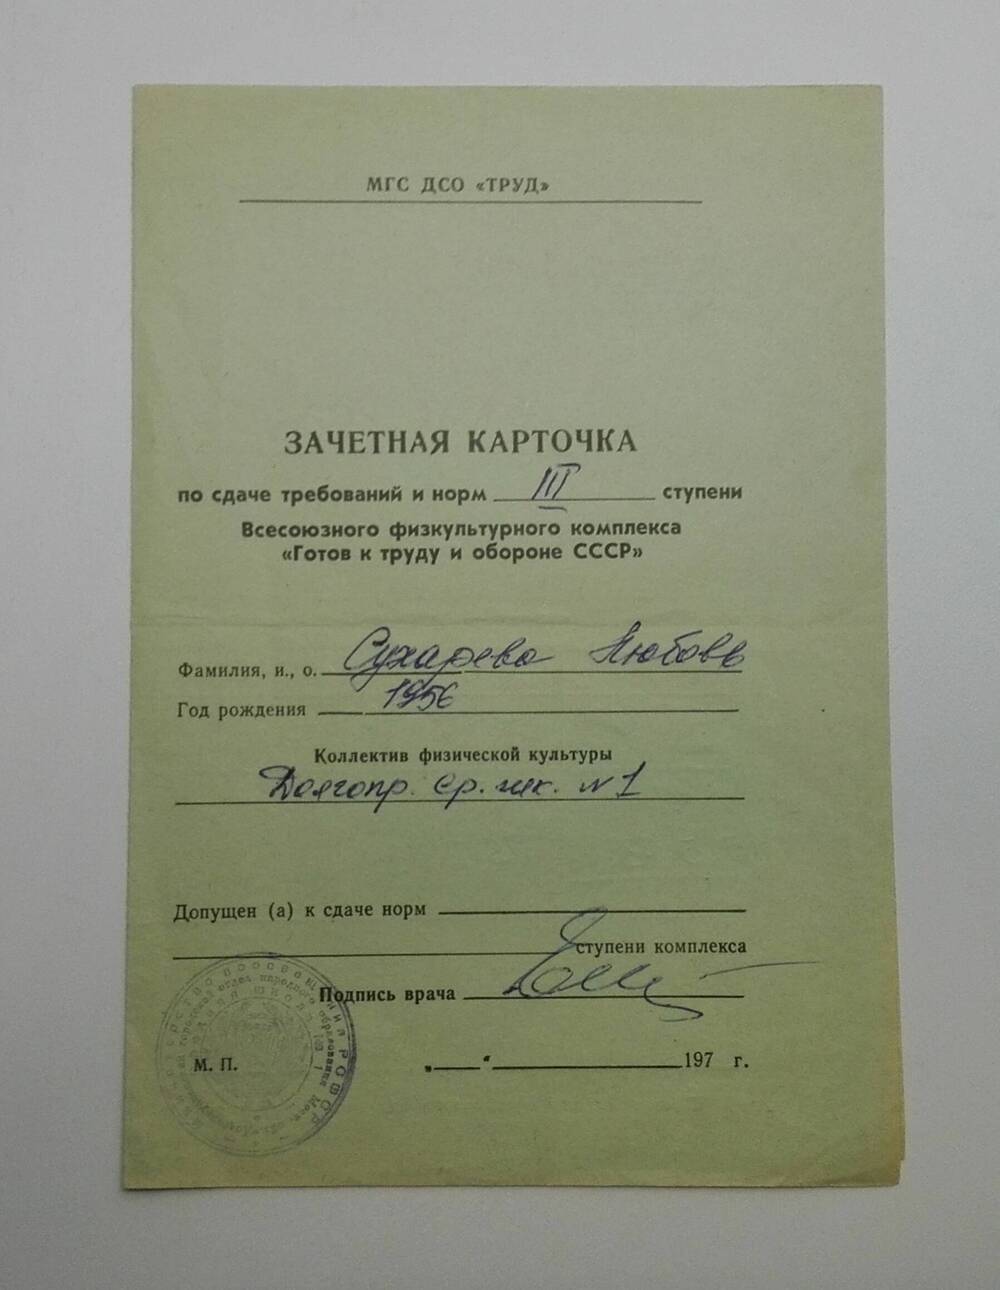 Карточка зачетная по сдаче требований и норм III ступени Всесоюзного физкультурного комплекса «Готов к труду и обороне СССР»